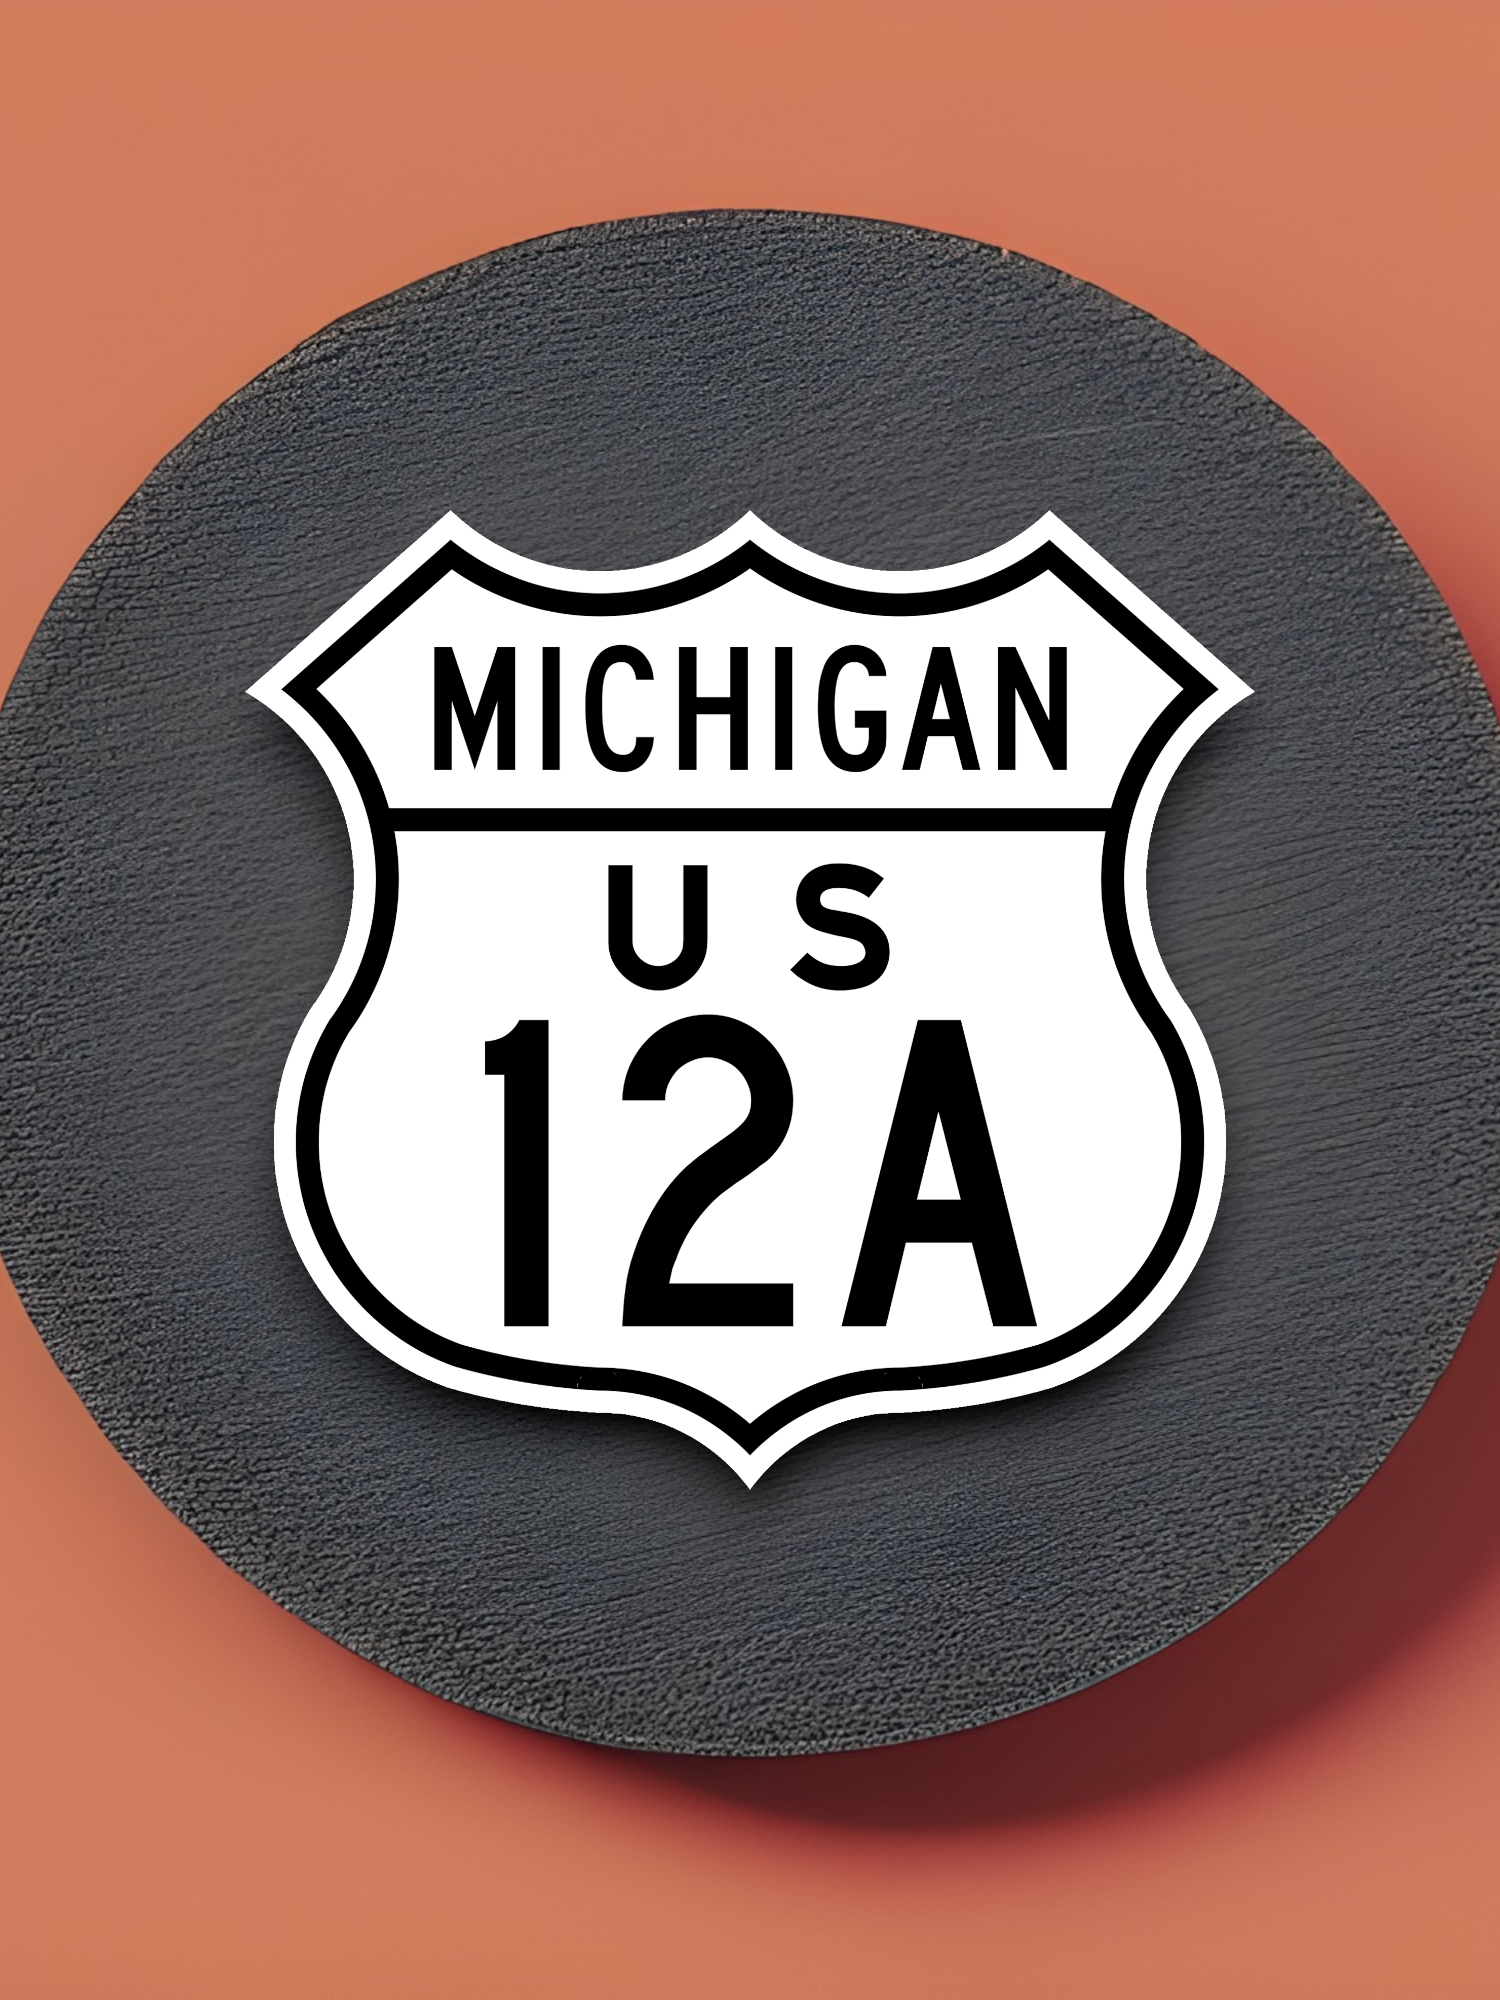 U.S. Route 12A Michigan Road Sign Sticker